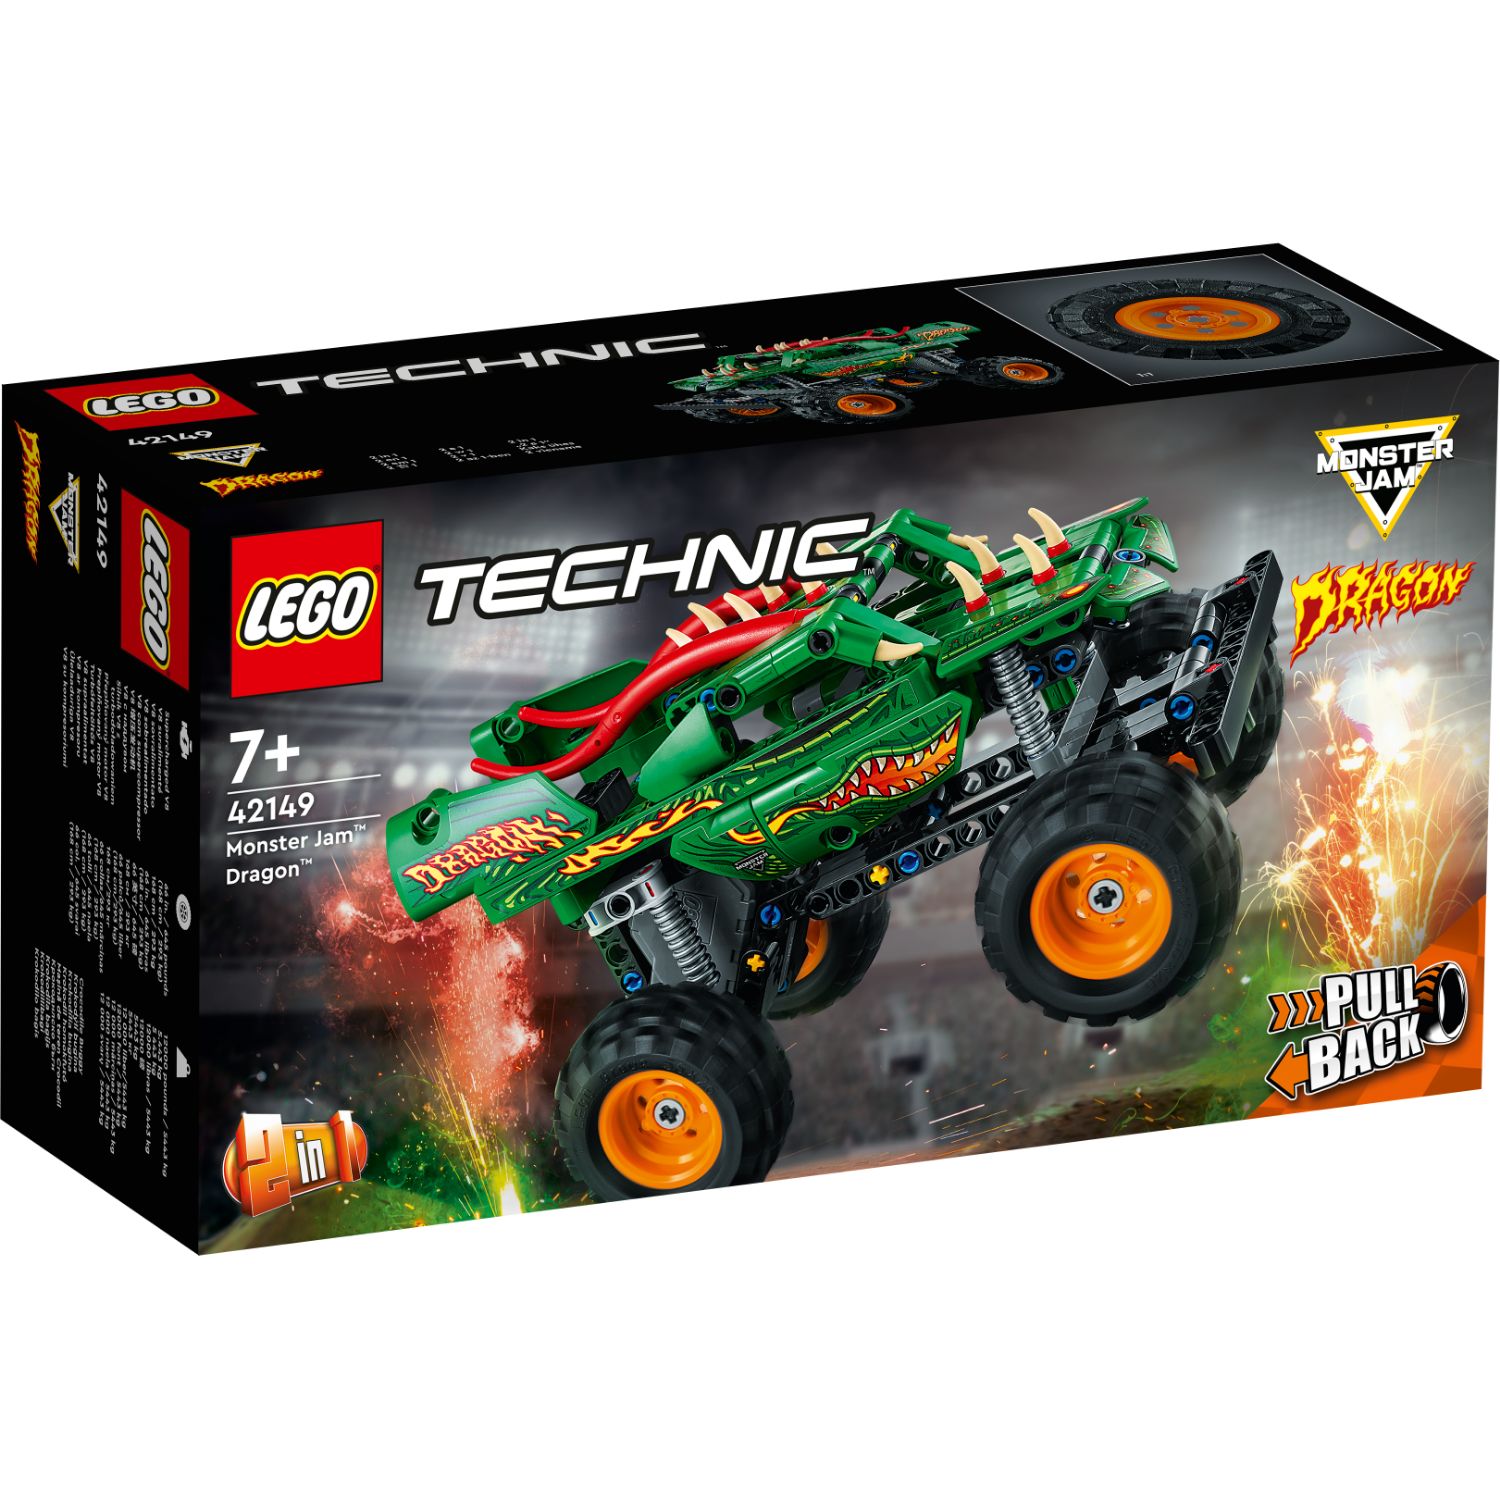 LEGO TECHNIC 42149 MONSTER JAM DRAGON - 411 2149 - 530560